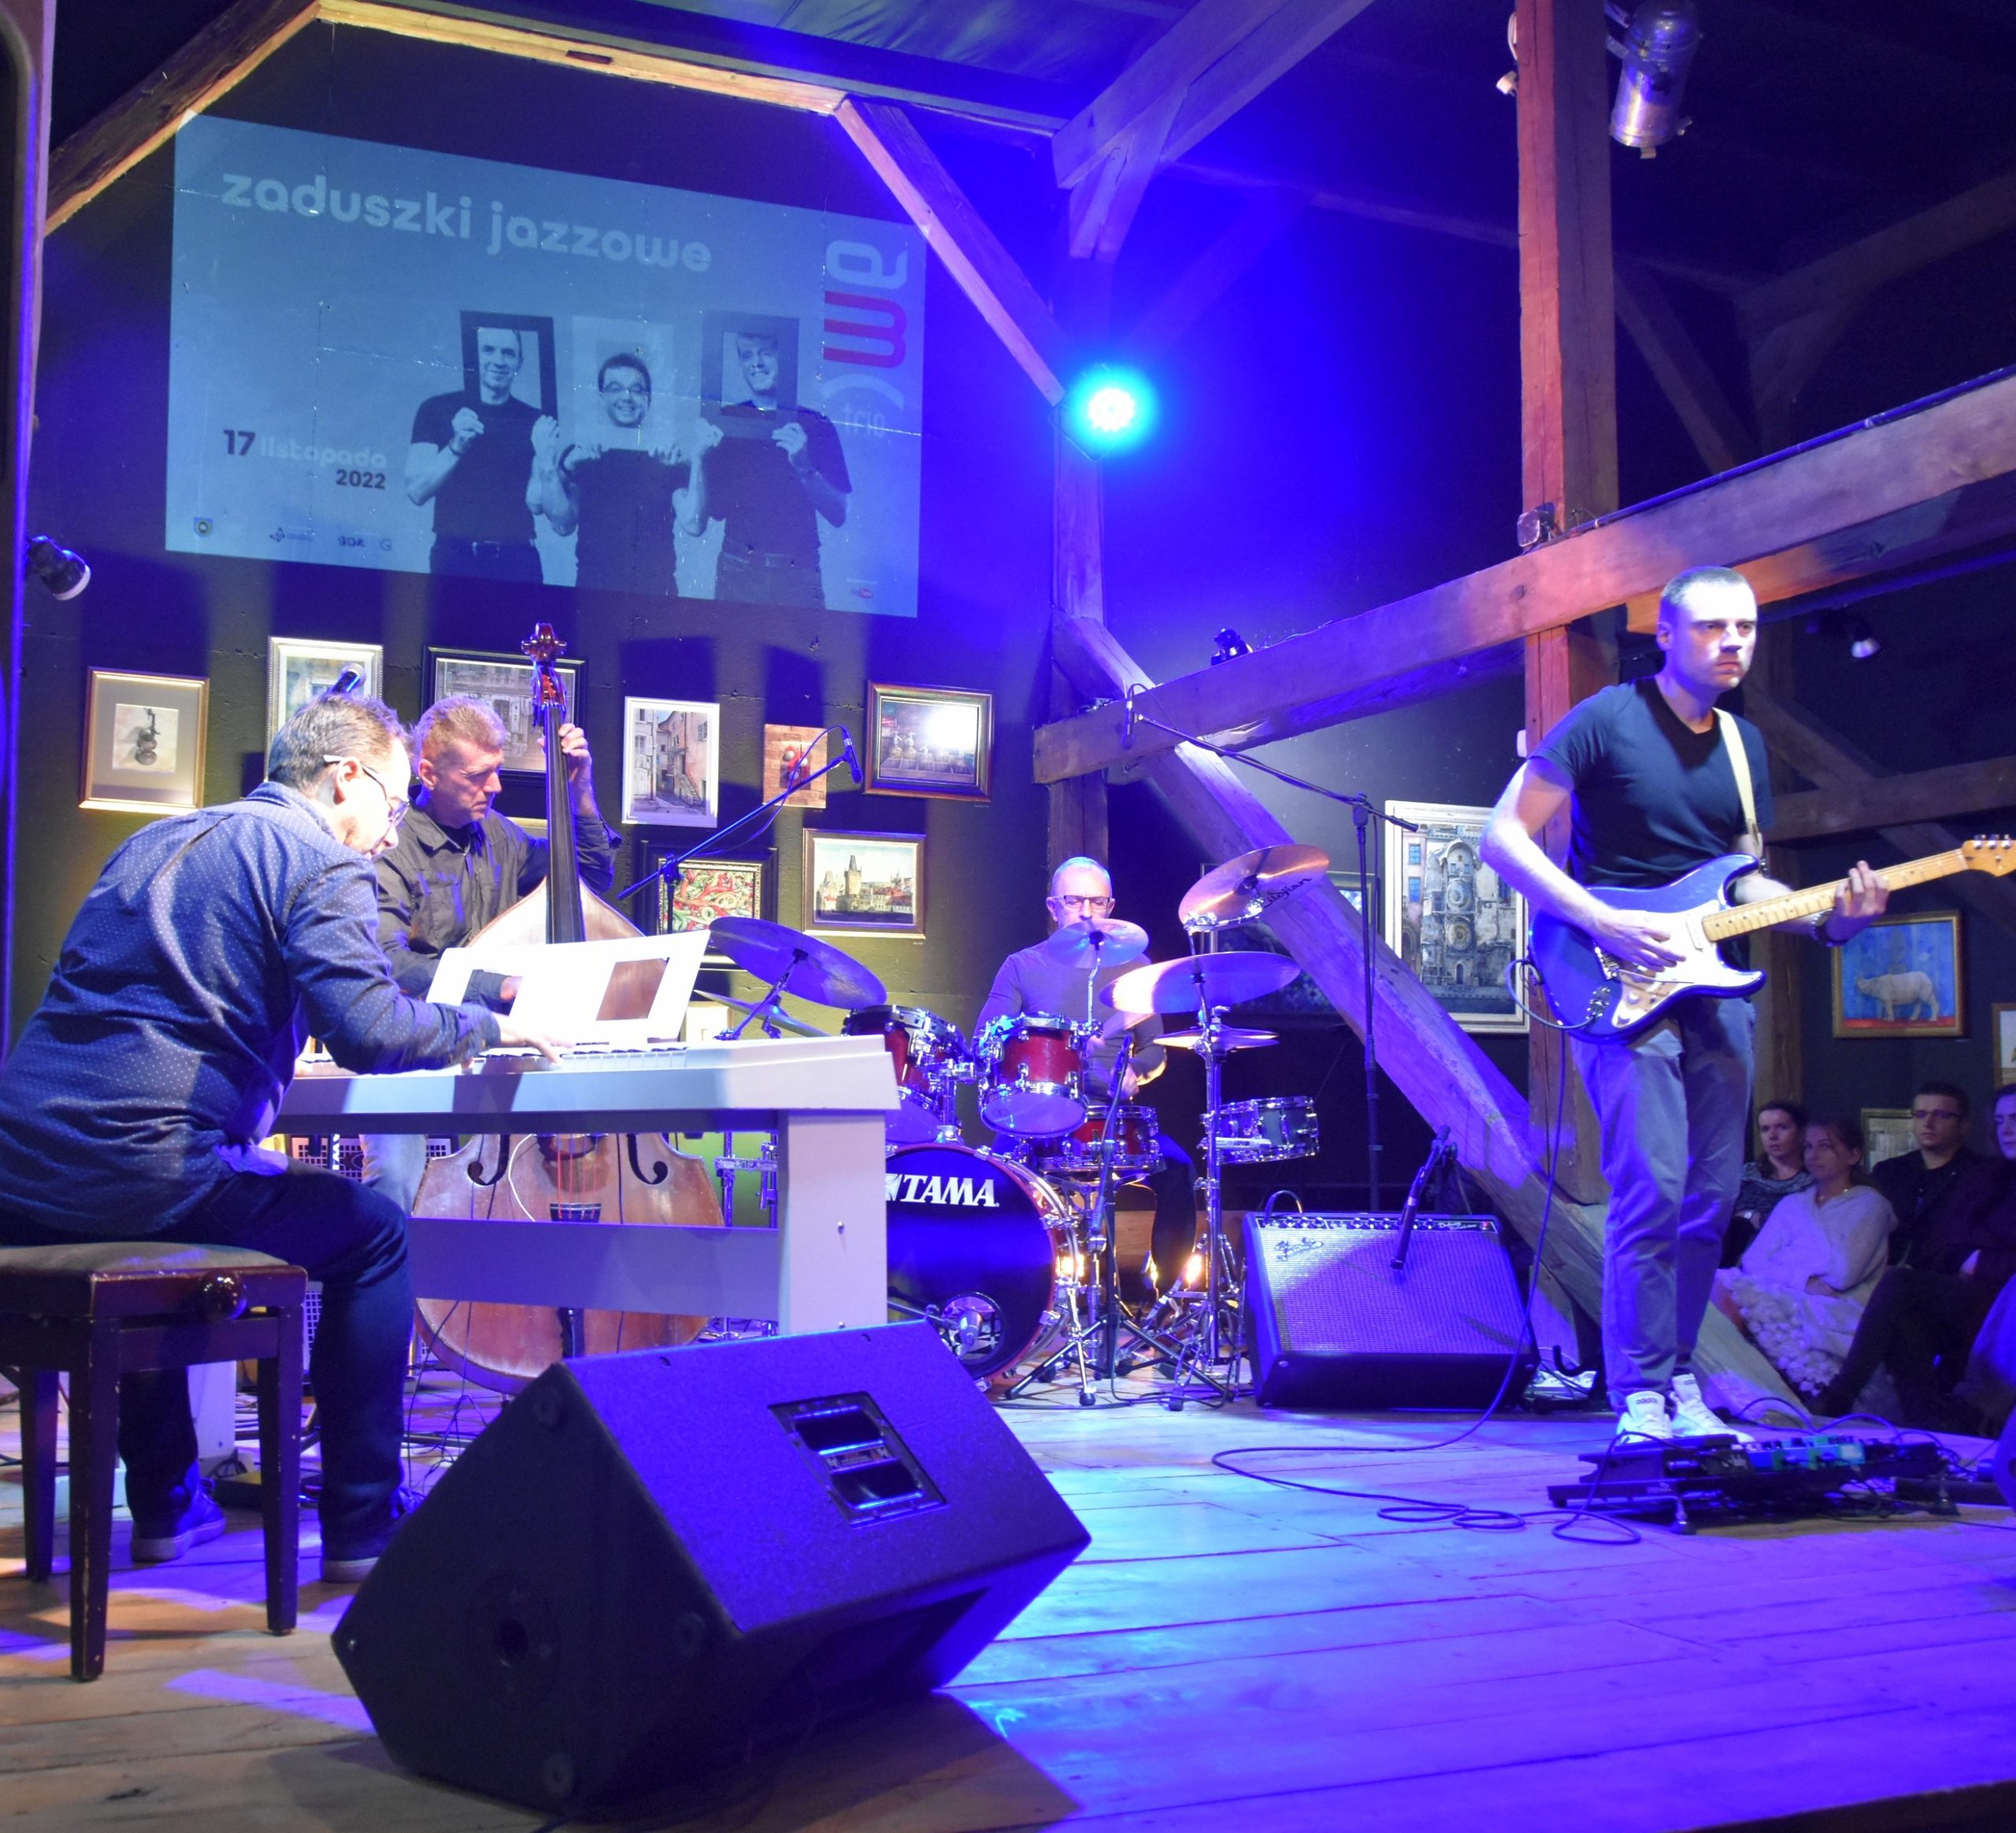 Grupa muzyczna złożona z czterech mężczyzn grajaca na instrumentach muzyczny na drewnianej scenie w rozległym pomieszczeniu.